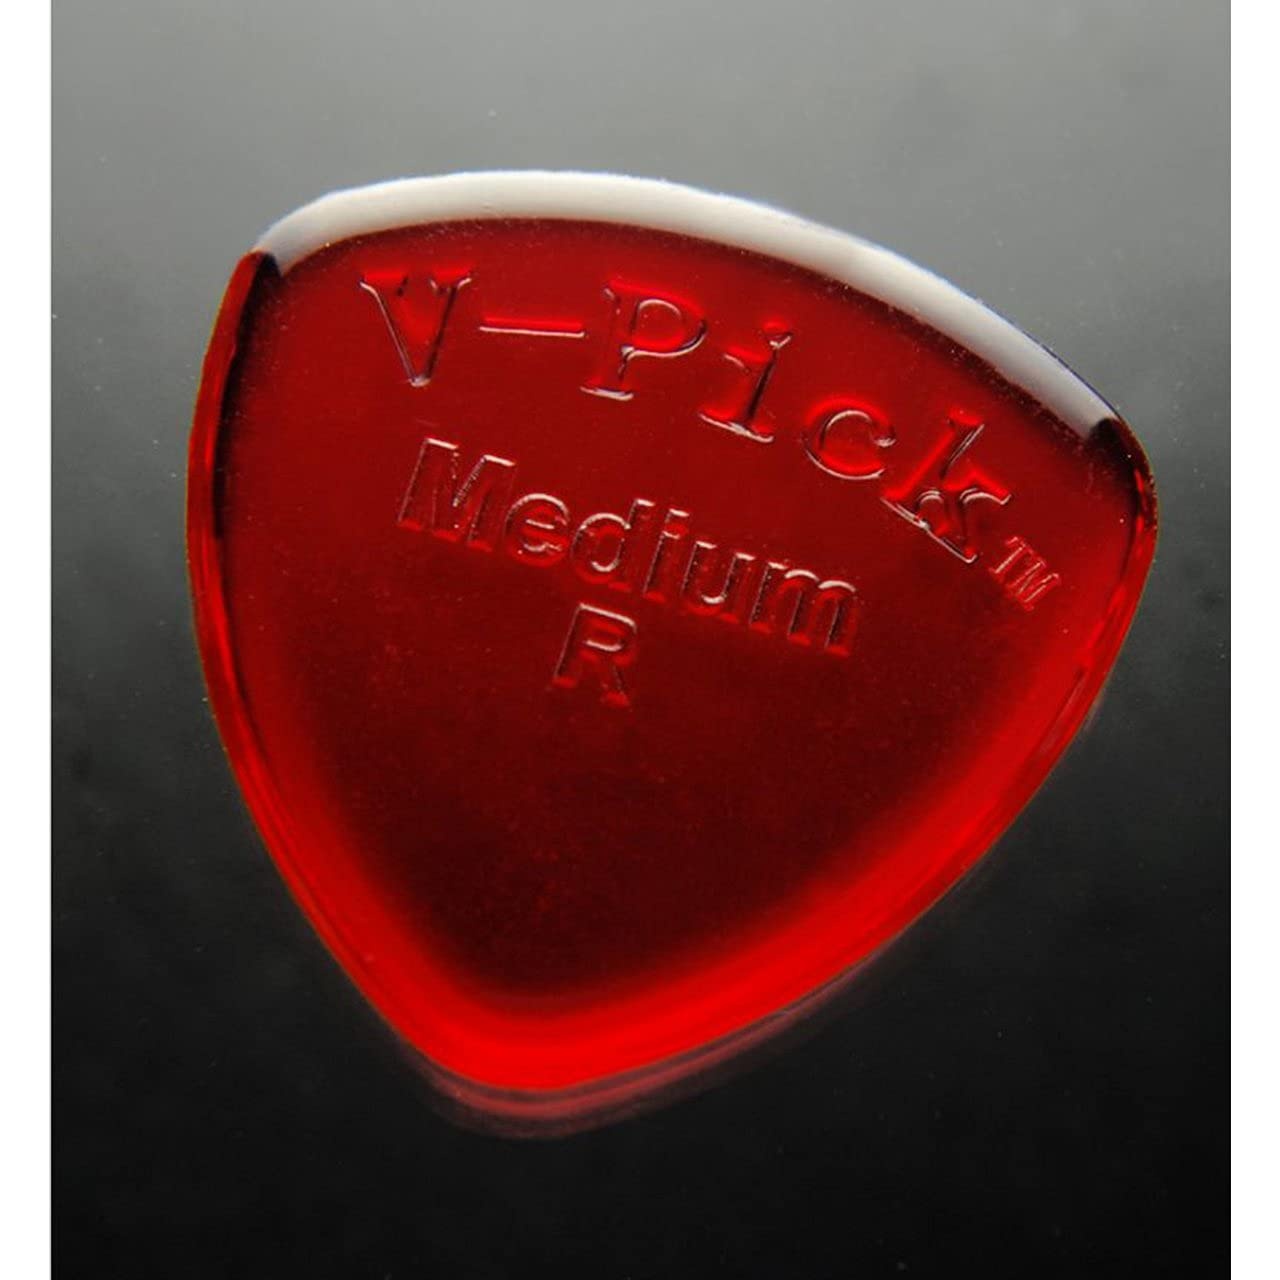 V-PicksTM »MEDIUM ROUND - GUITAR AND MANDOLINE PICK« Plektren für Gitarre und Mandoline - 2.75mm - Farbe: Ruby Red